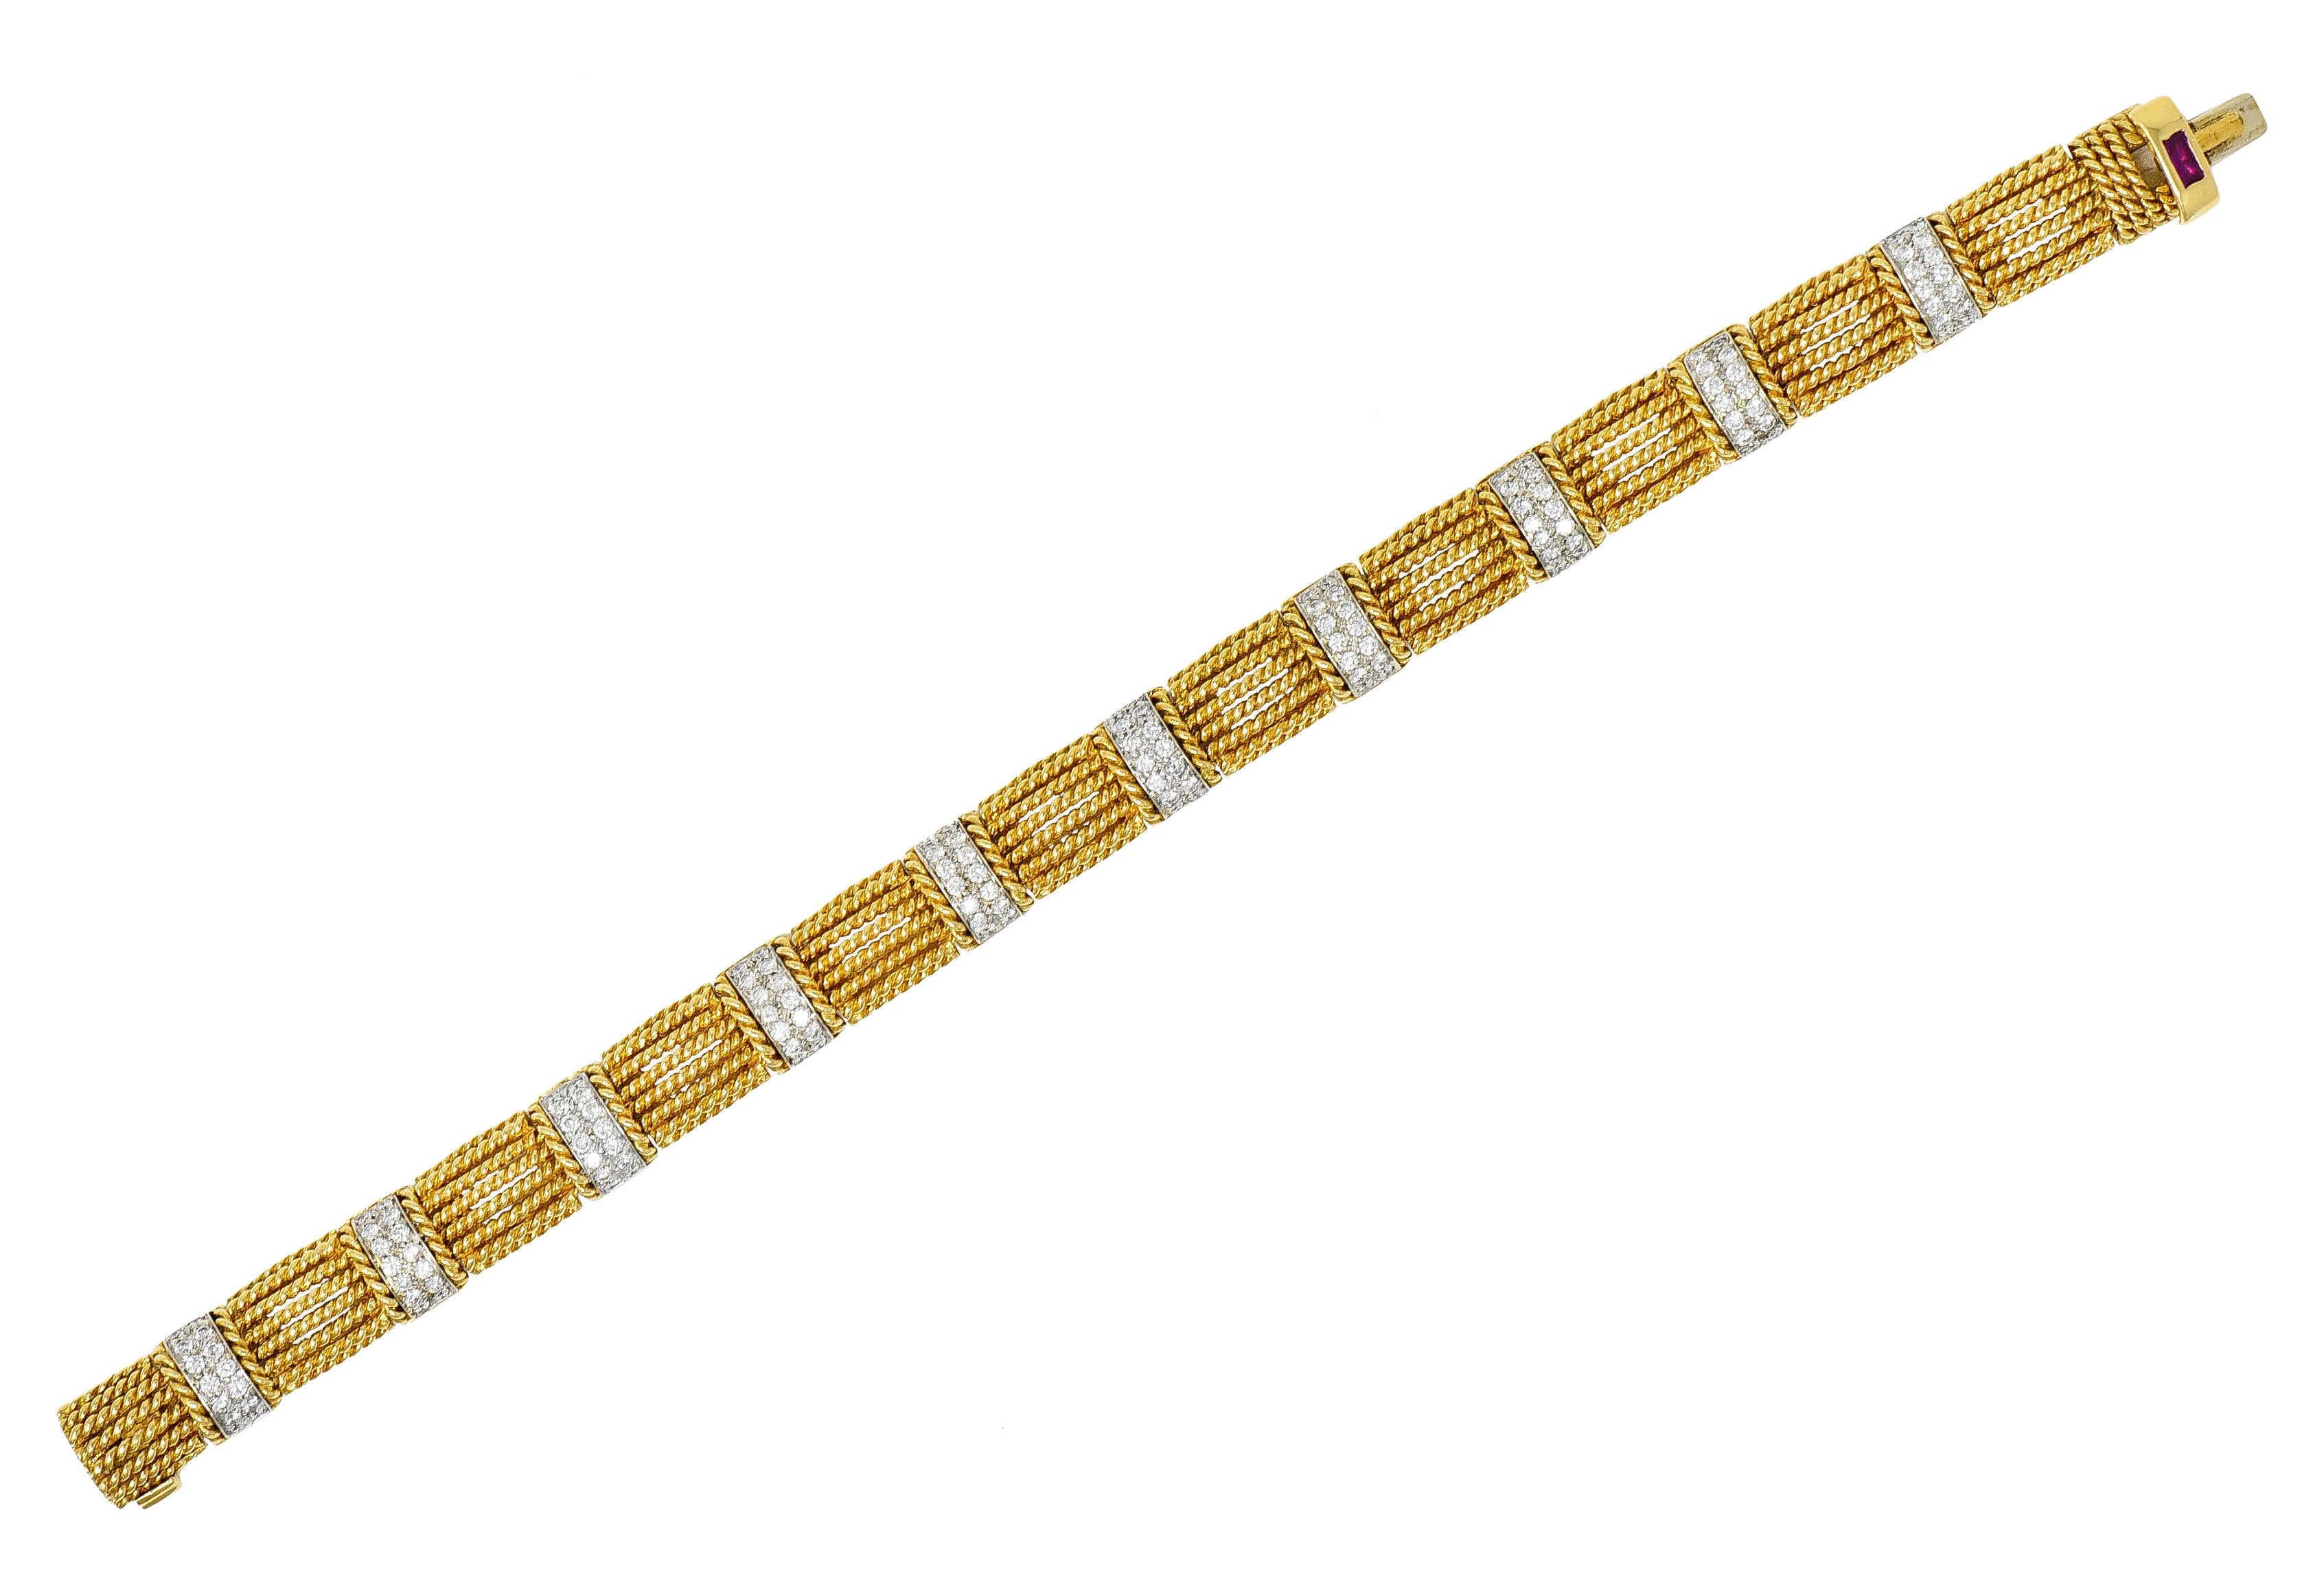 Das Armband besteht aus kissenförmigen, gedrehten Seilgliedern, die sich mit pavéfarbenen Diamantstäben abwechseln

Runde Diamanten im Brillantschliff sind in Weißgold gefasst und werden von einem zusätzlichen Golddrahtseil flankiert

Mit einem